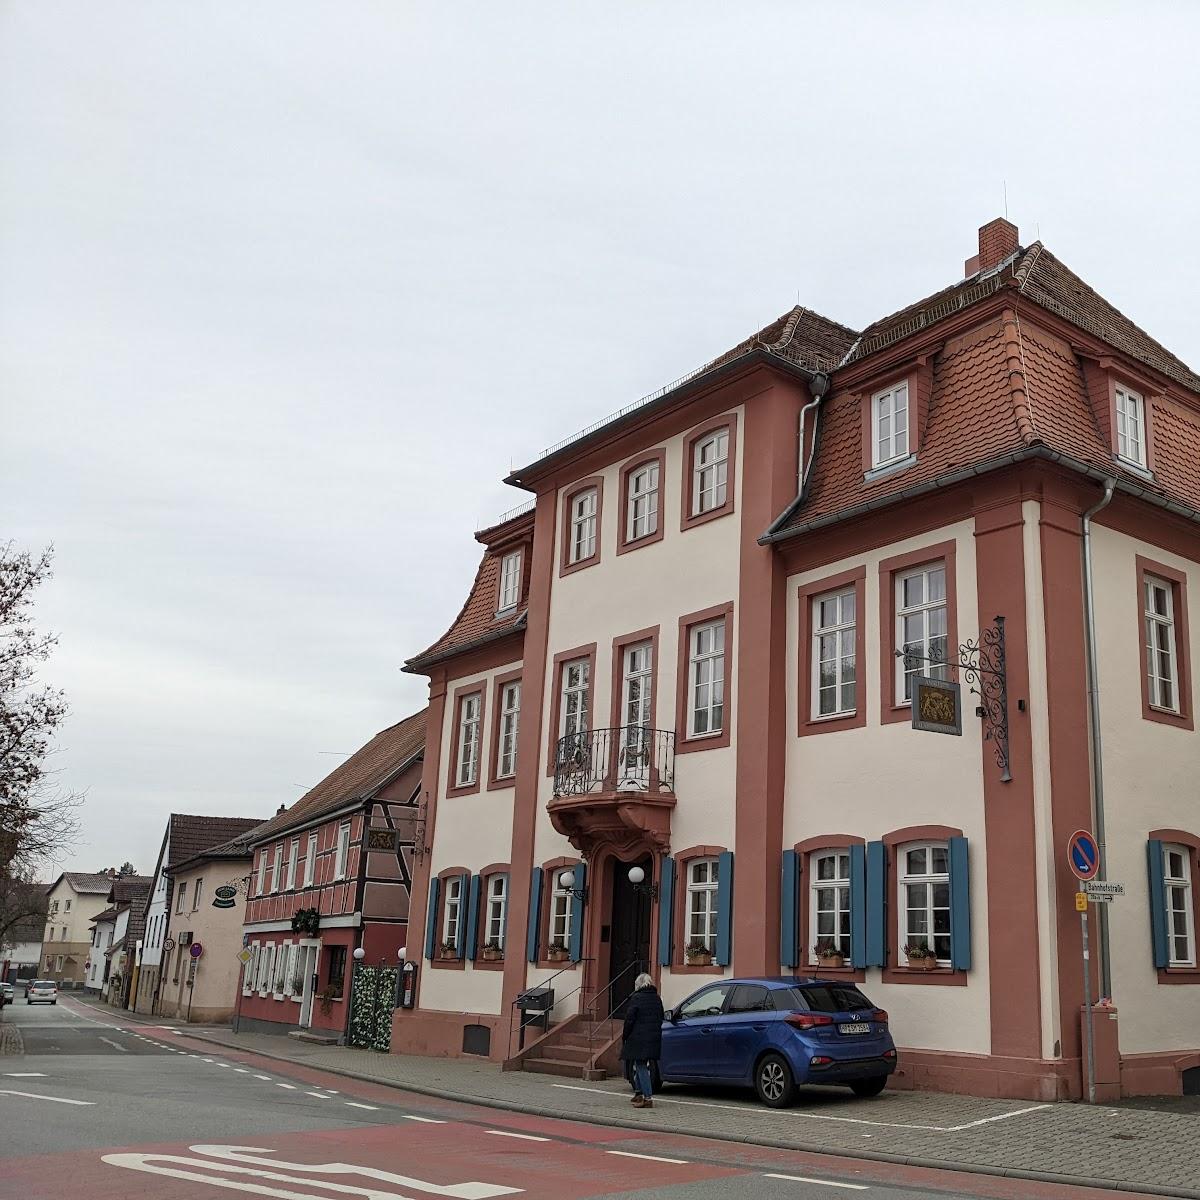 Restaurant "Gasthaus zum Lamm" in Lorsch